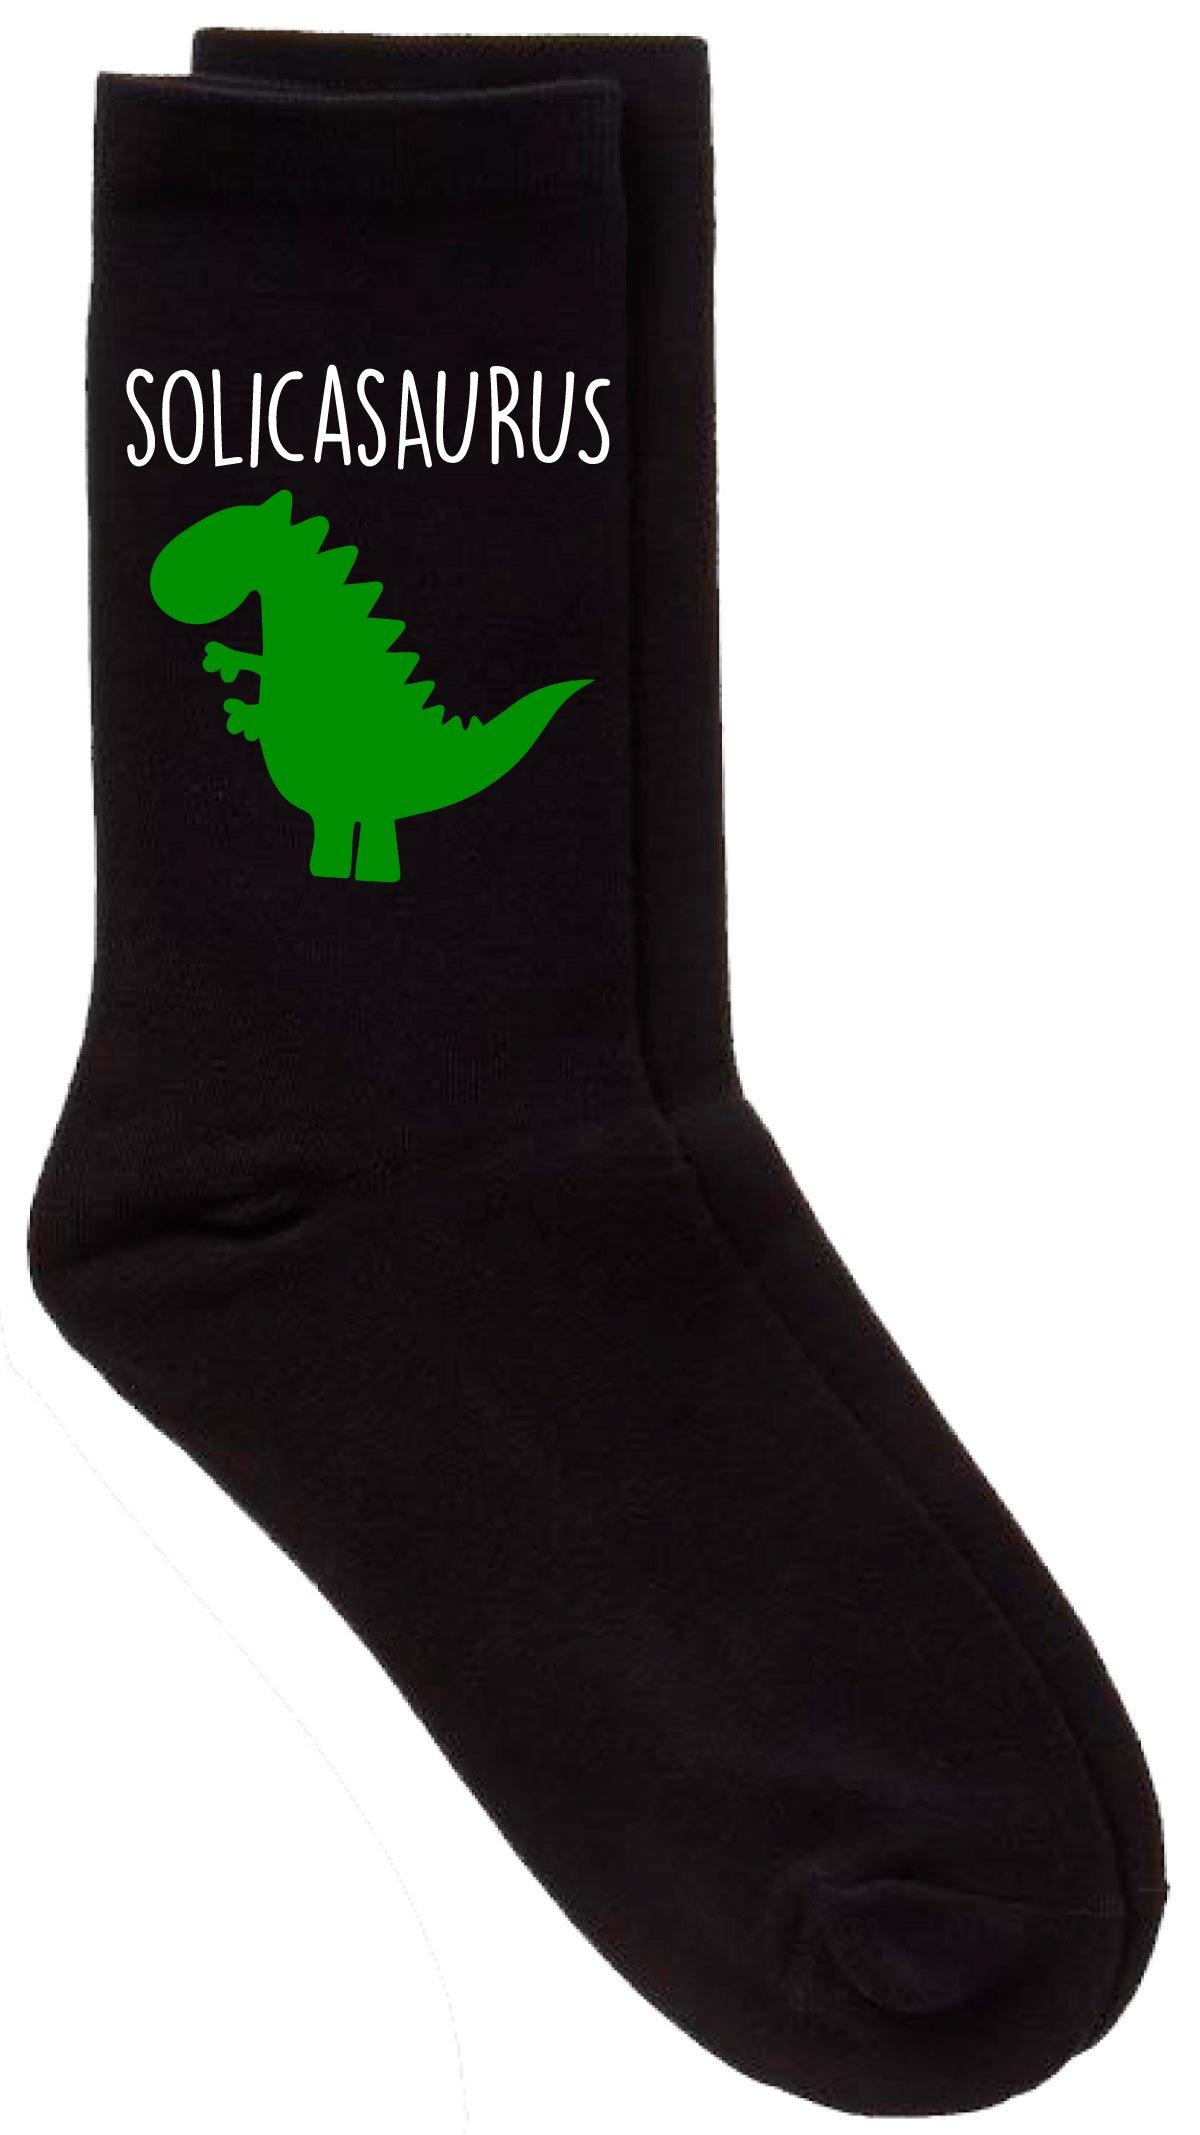 Solicitor Dinosaur Solicasaurus Black Calf Socks